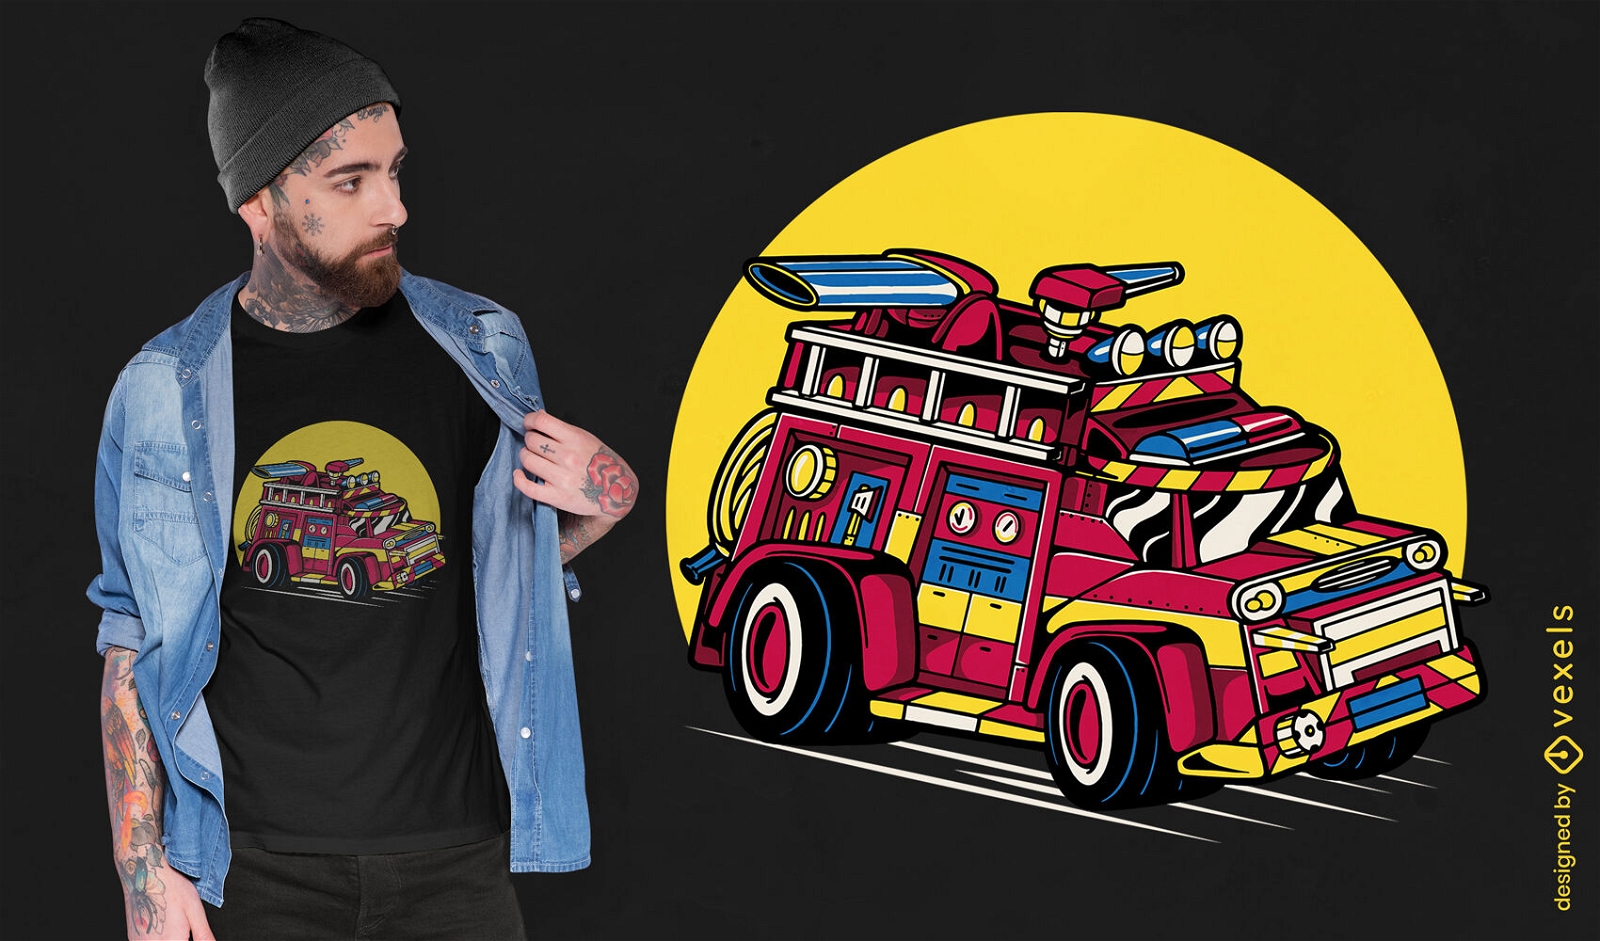 Firetruck correndo atrav?s do design de camiseta de rua